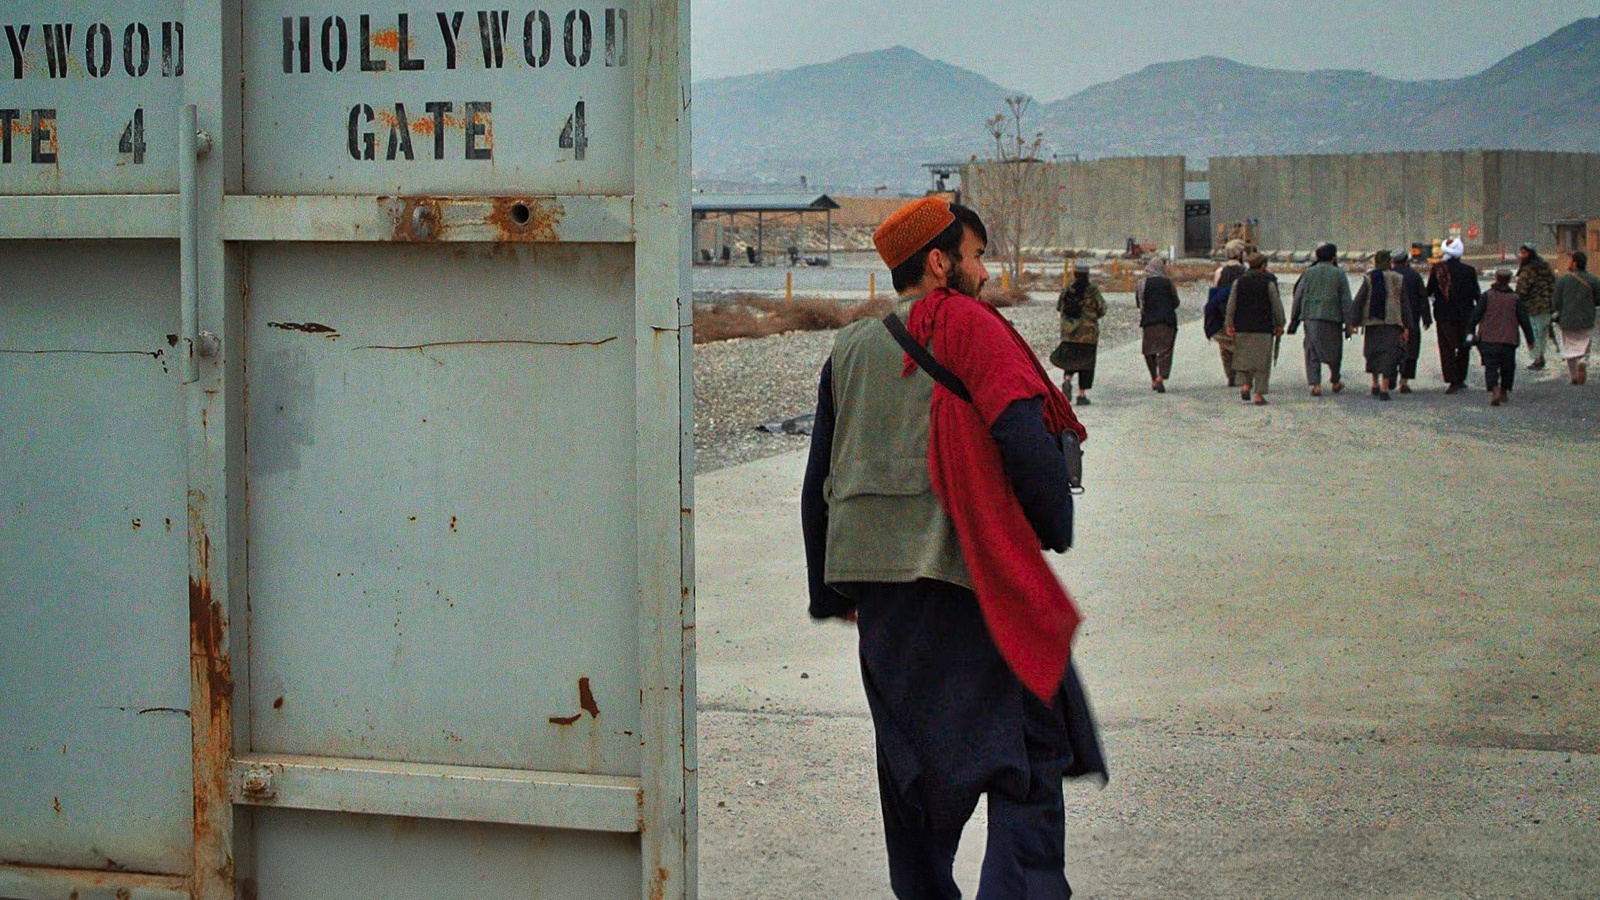 Hollywoodgate, la recensione: l'inquietante cronaca del regime Talebano